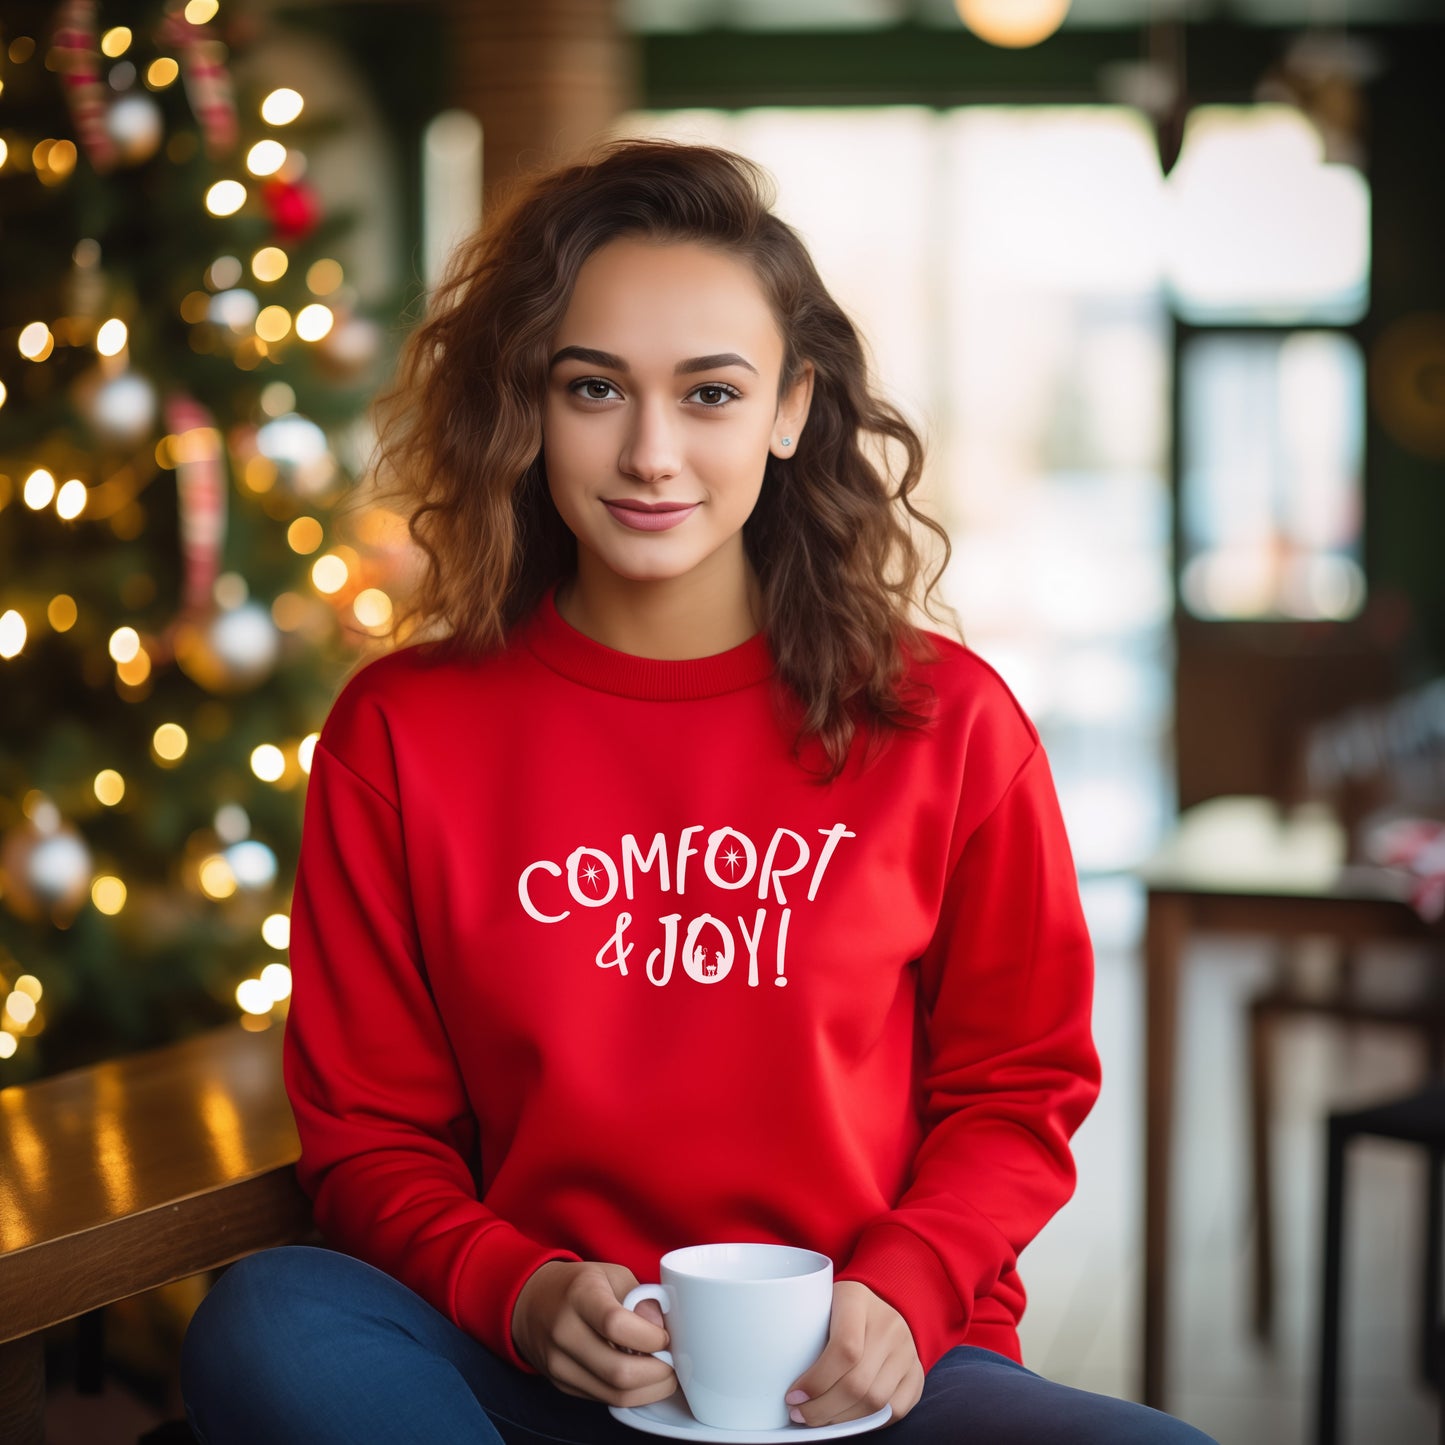 Comfort & Joy Sweatshirt in red